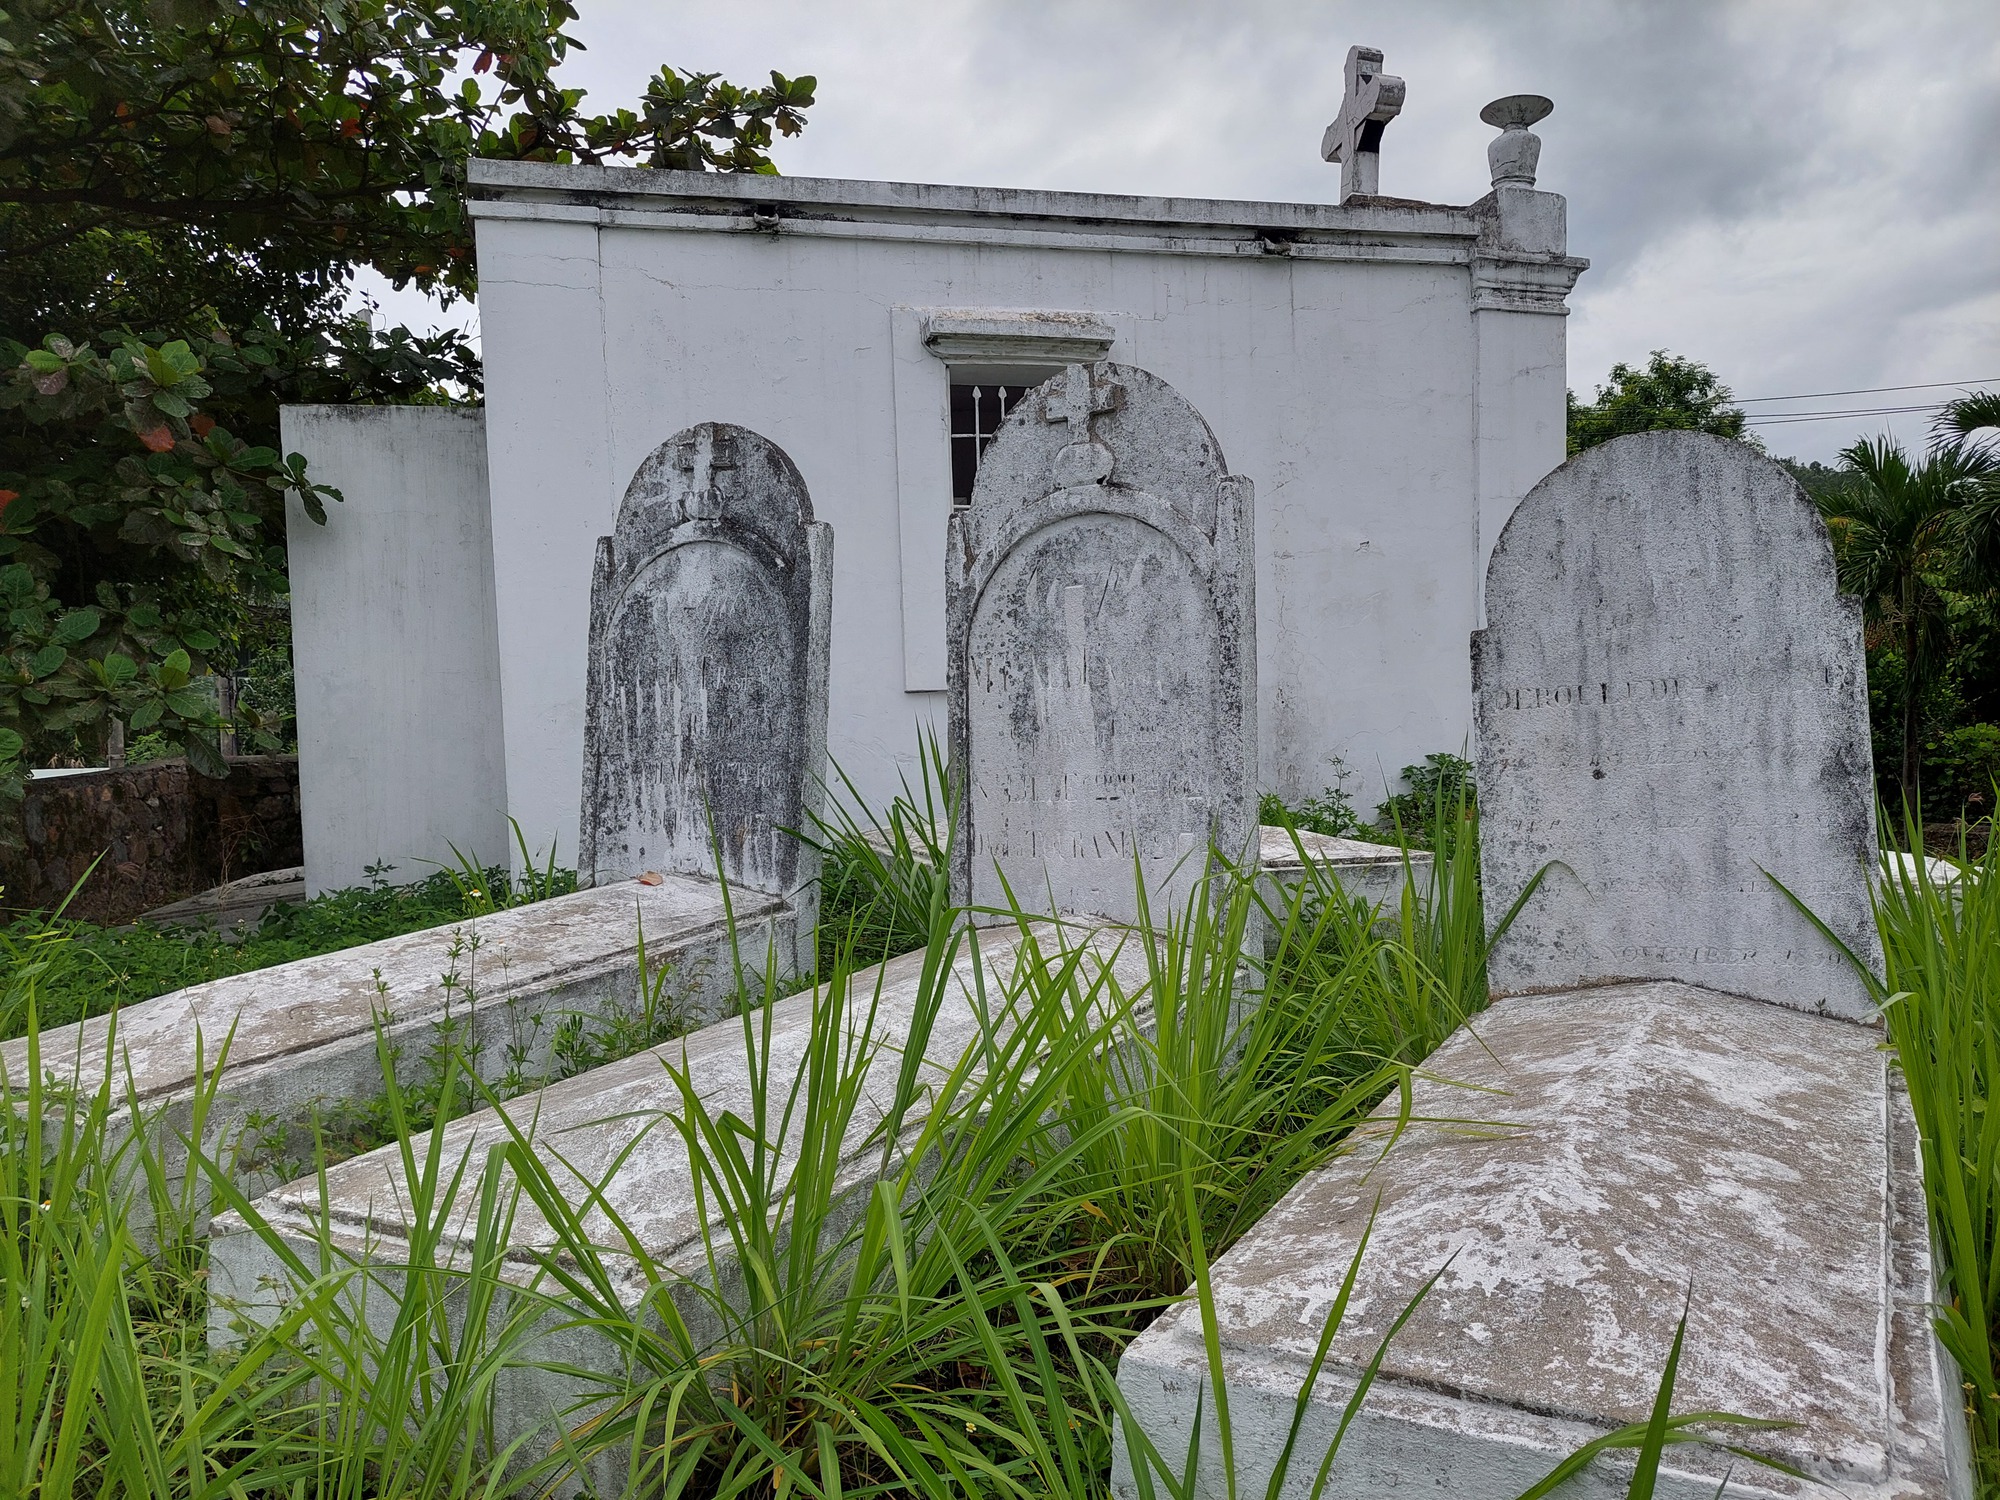 Kỳ lạ 'tháp hài cốt' cùng khu mộ trắng xóa ở bán đảo Sơn Trà - Ảnh 2.